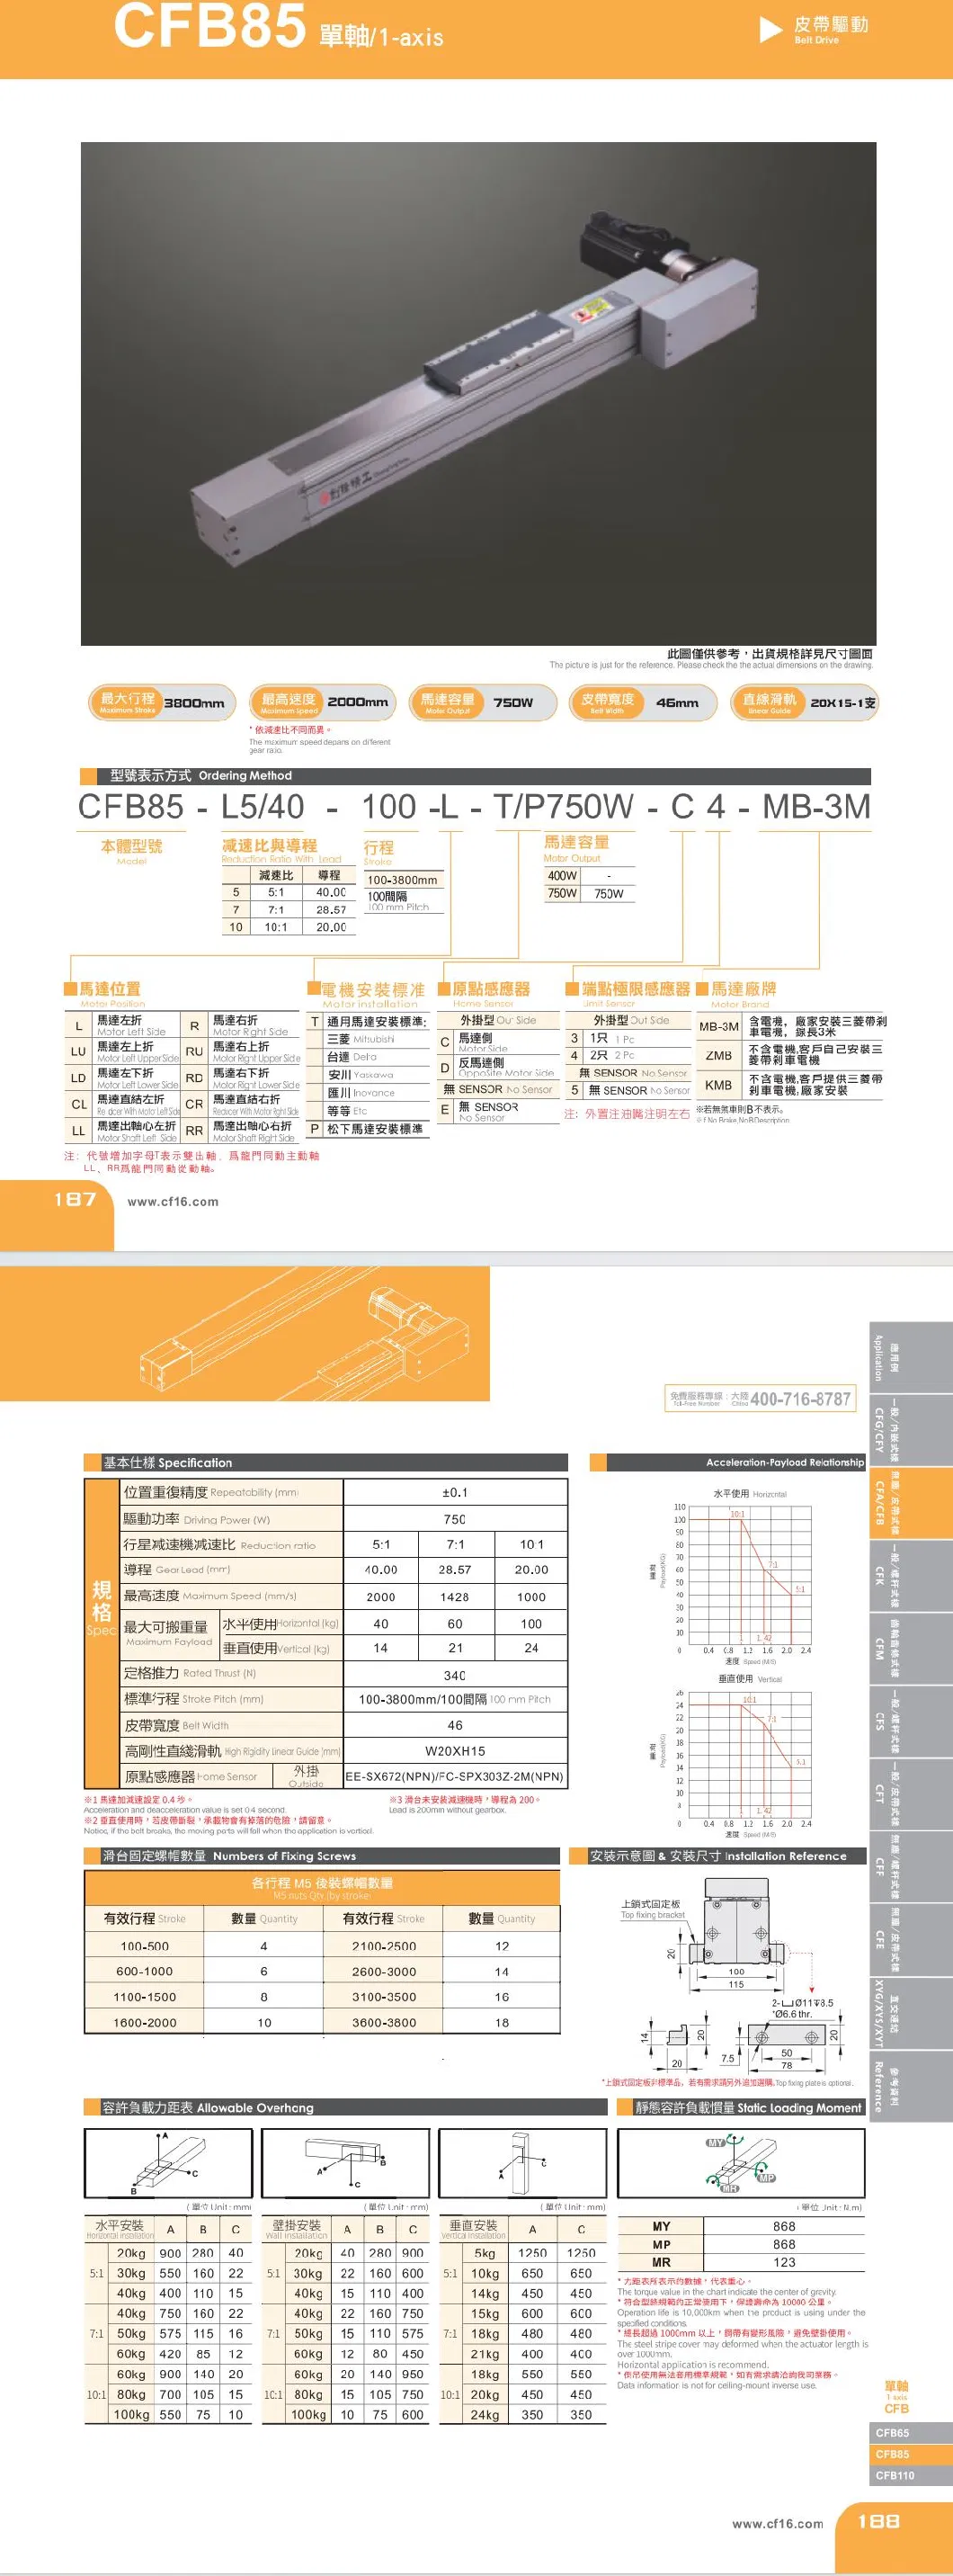 Linear Guide Way Belt Drive Rail Linear Motion Guide Rail CNC Linear Module Guide